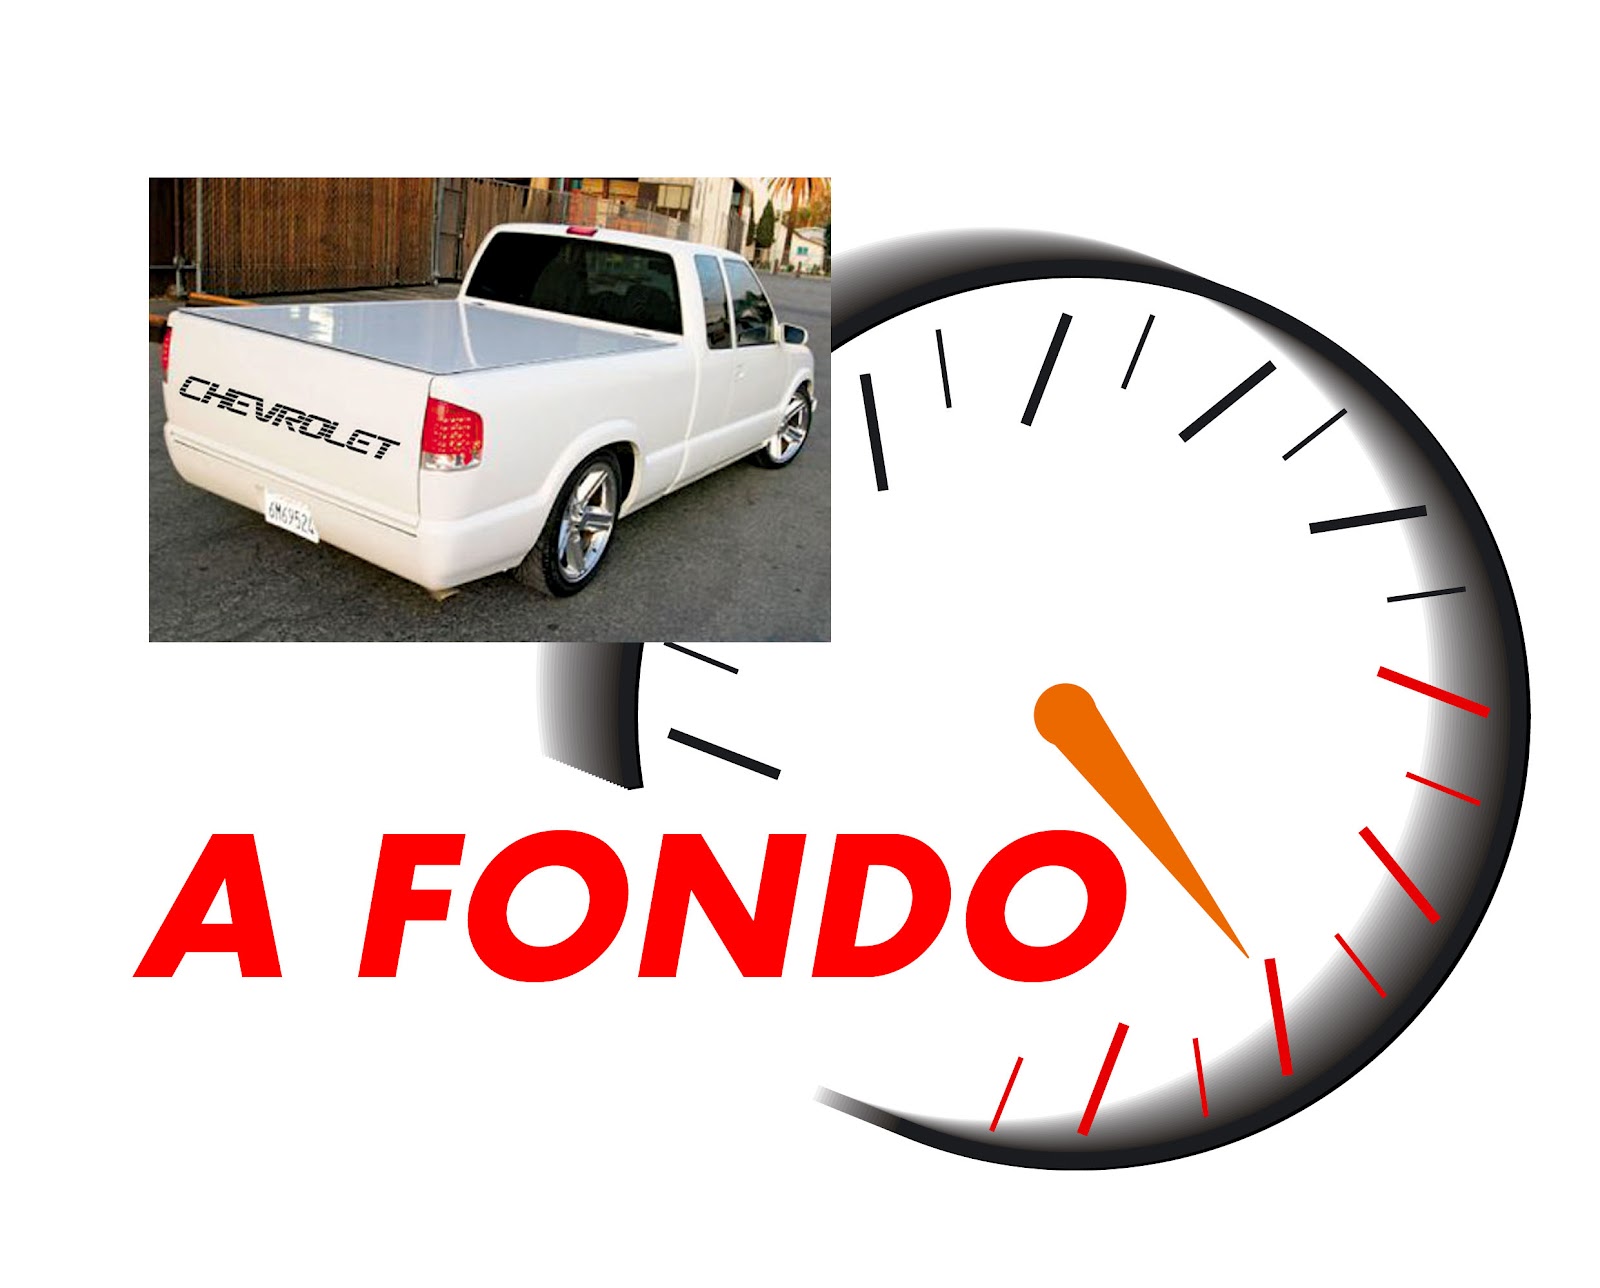 El camarero Altoparlante suizo A FONDO!: Calcos para camionetas CHEVROLET